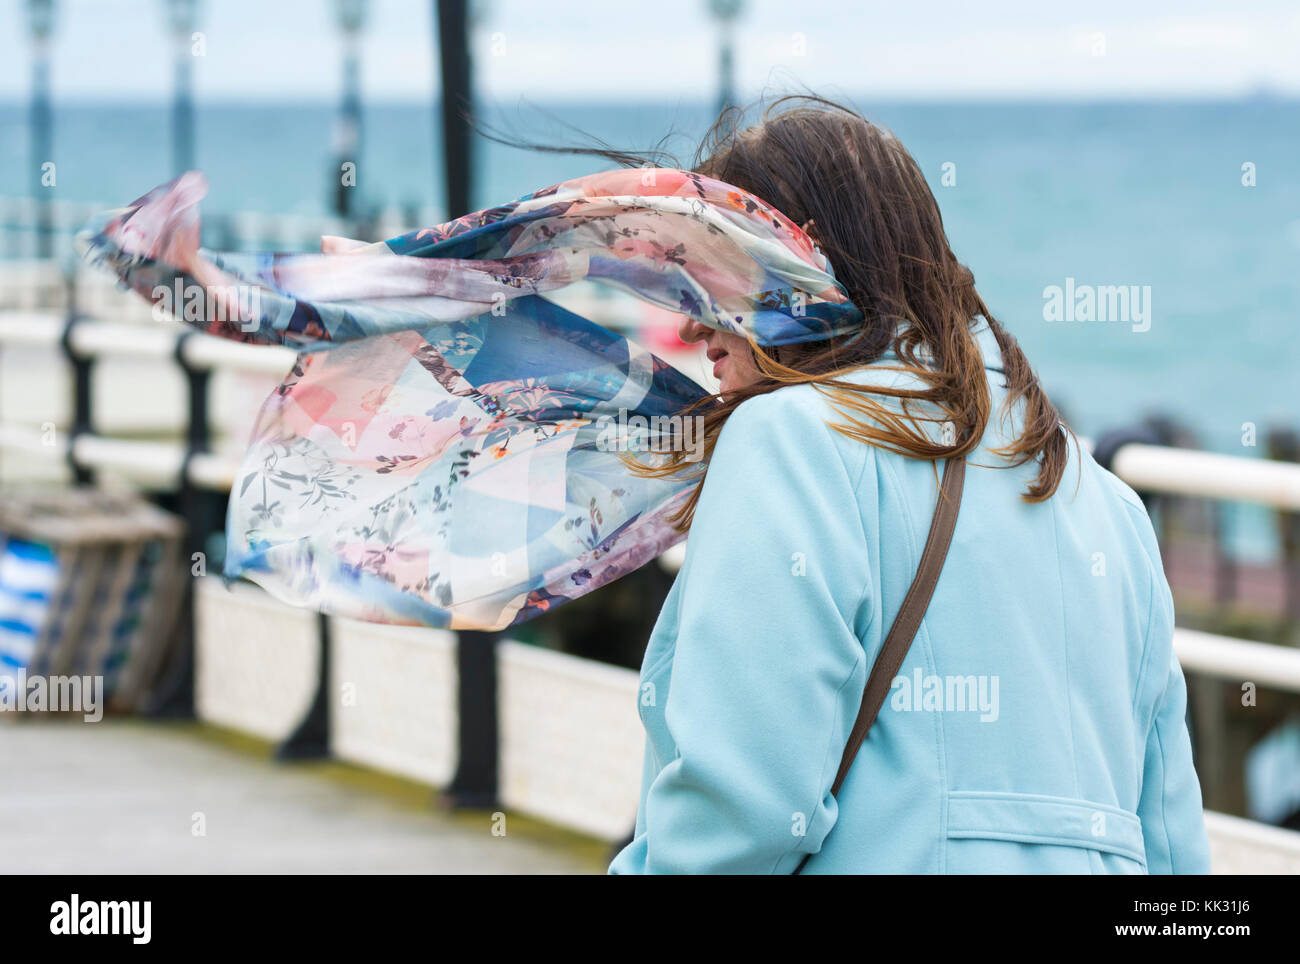 Frau Wandern an einem windigen Tag im Herbst mit einem Mantel und Schal, weht im Wind, in Großbritannien. Stockfoto